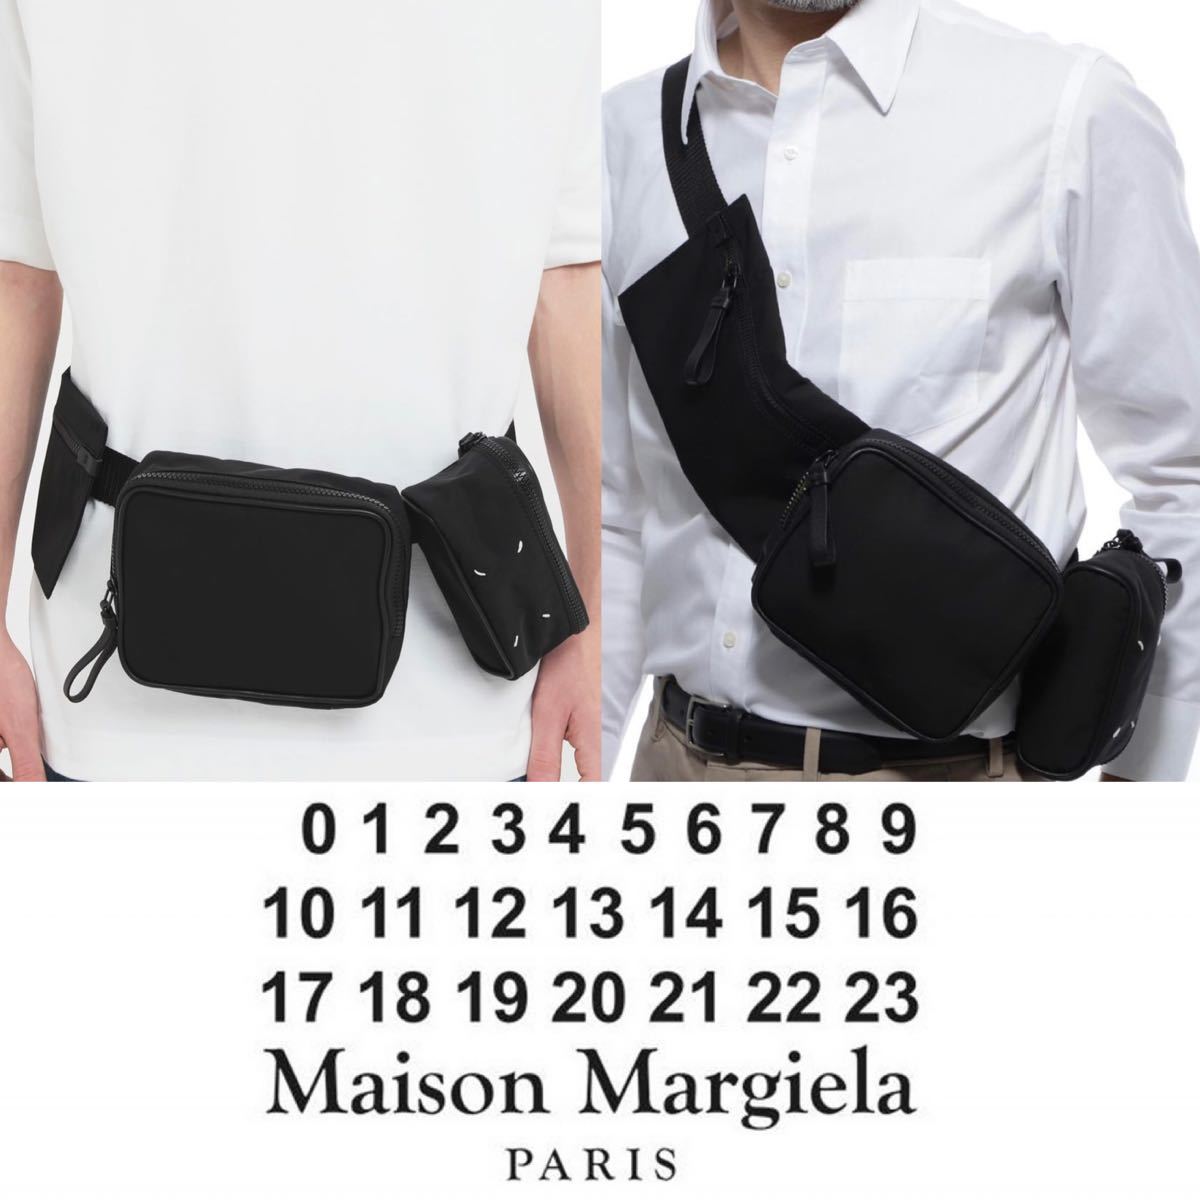 Maison Margiela メゾン マルジェラ ベルト ショルダー バッグ ボディーバッグ ポーチ カバン ブラック UNI